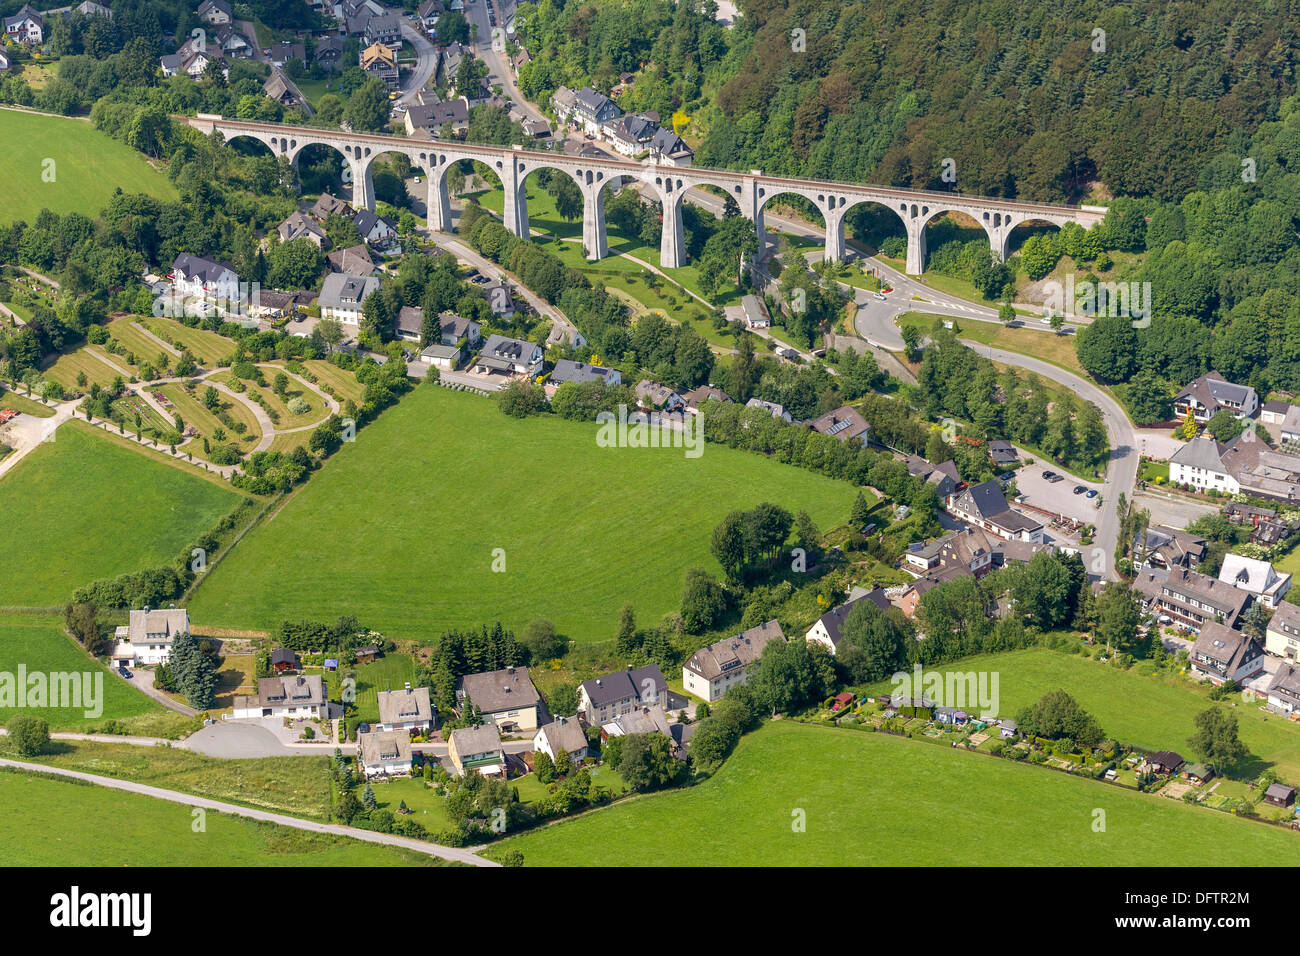 Vista aérea del viaducto, Stryck, Willingen, Willingen - Upland, Hesse, Alemania Foto de stock